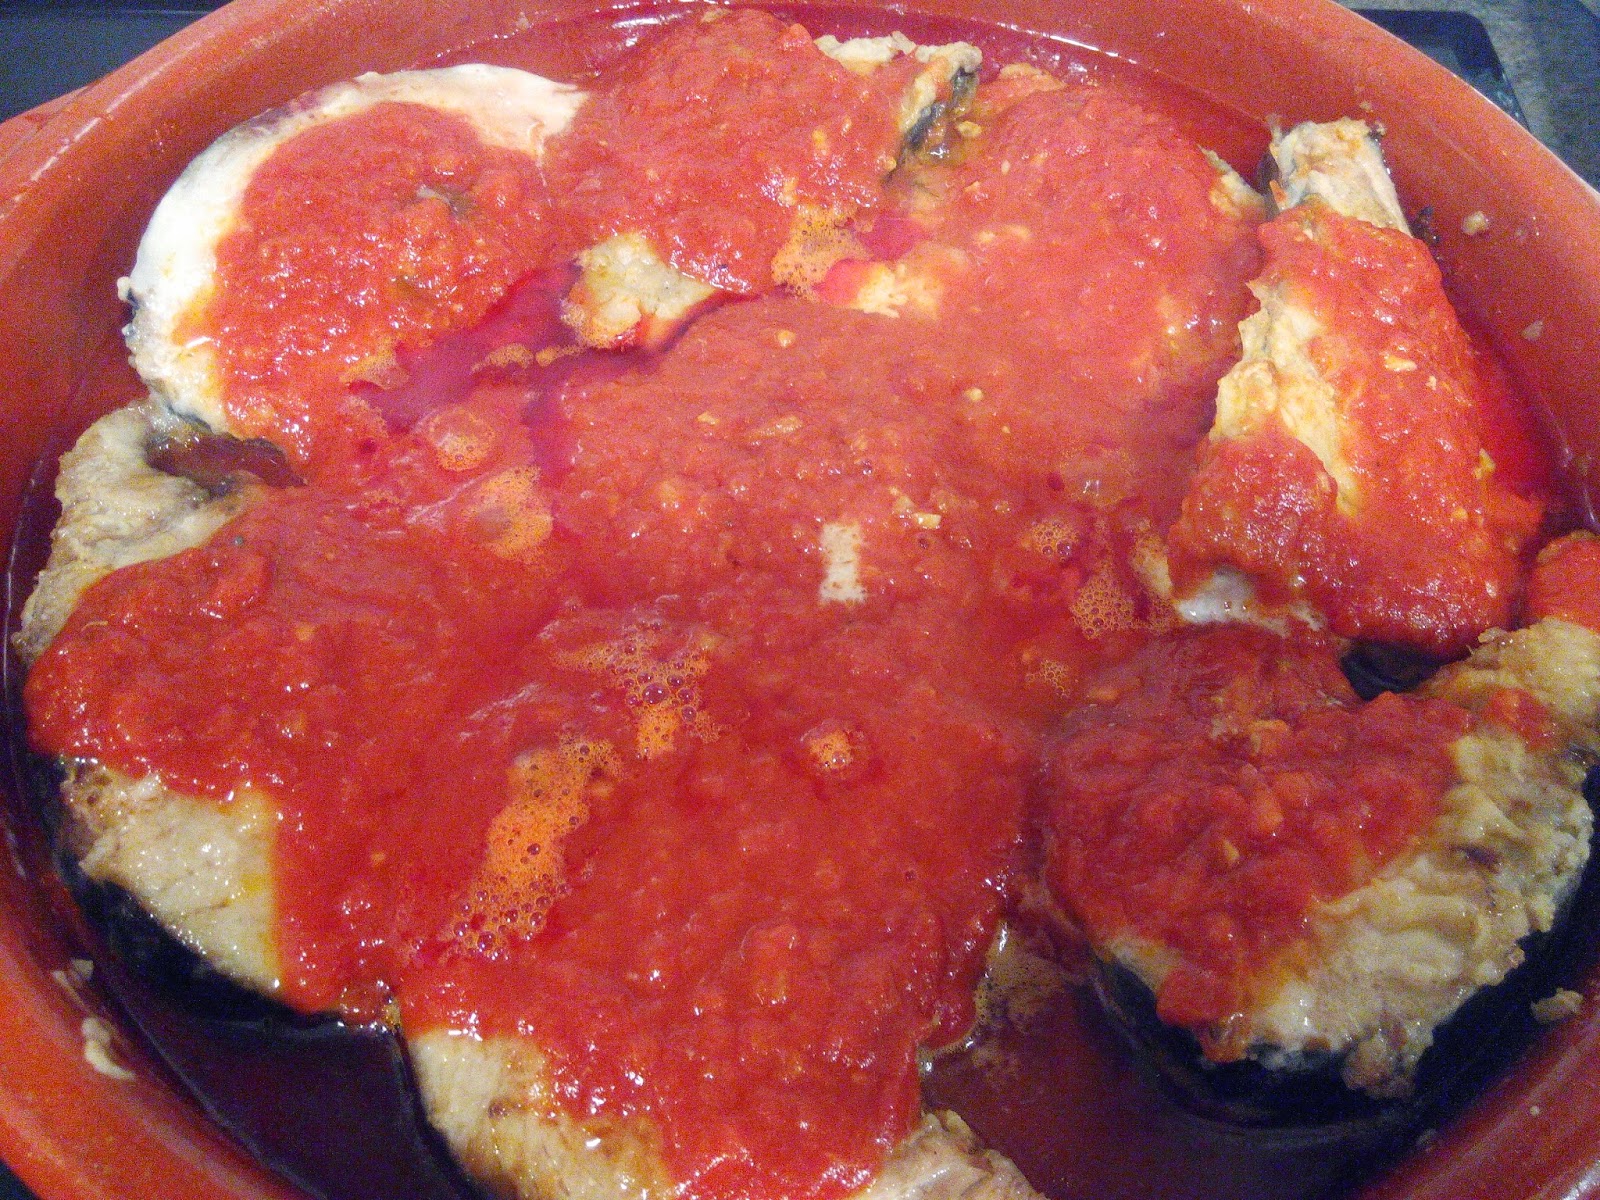 Rodajas De Bonito Con Tomate
